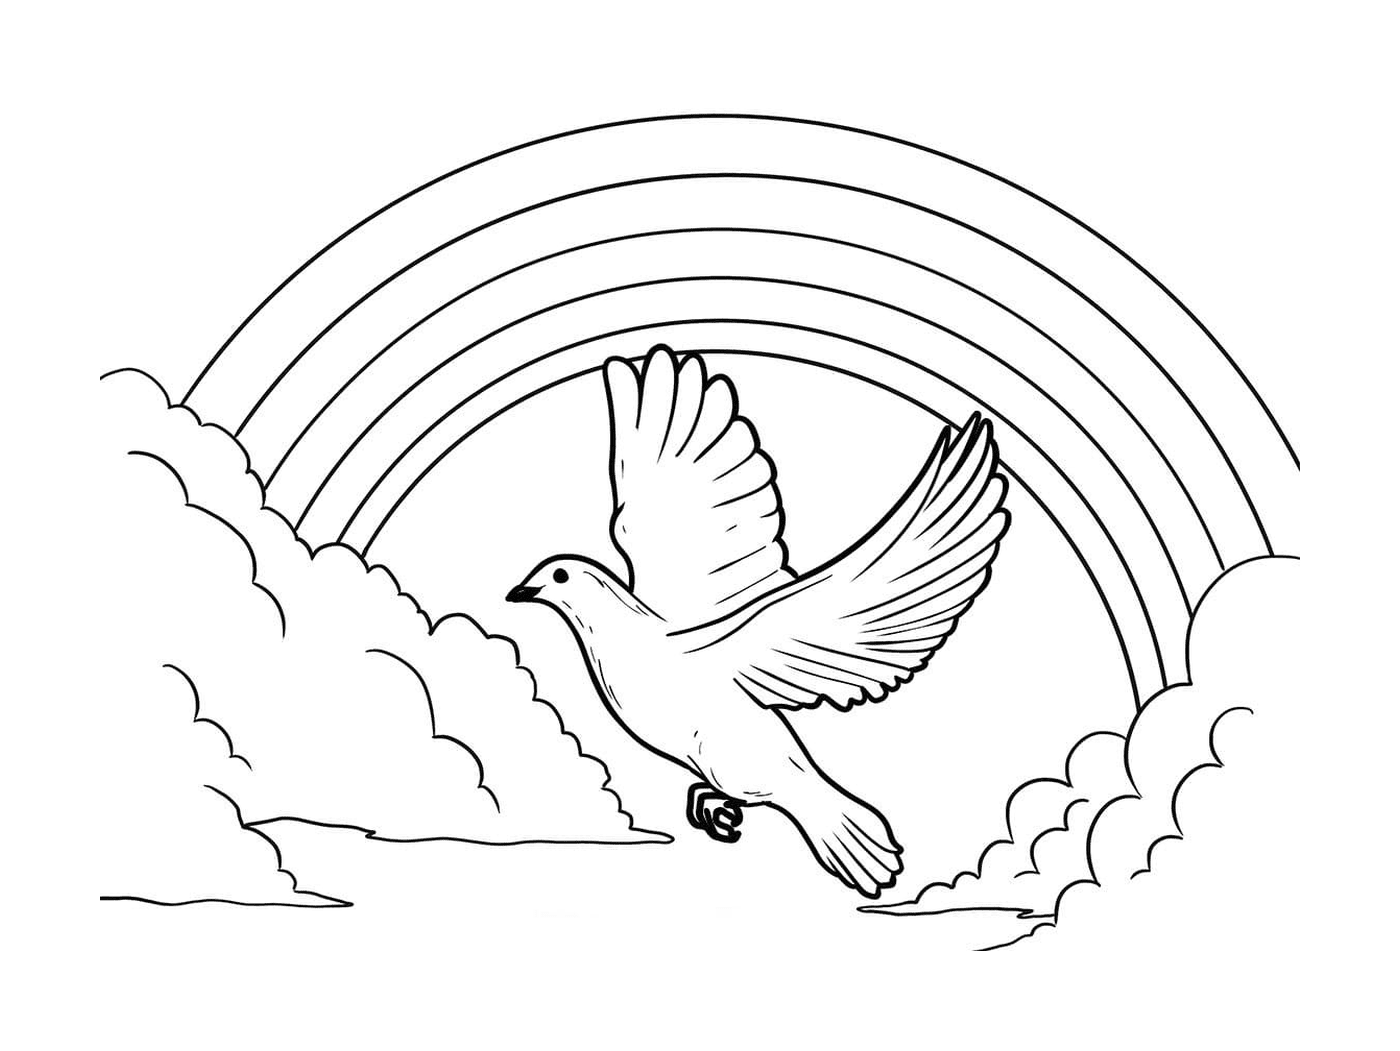   Un oiseau volant près d'un arc-en-ciel 